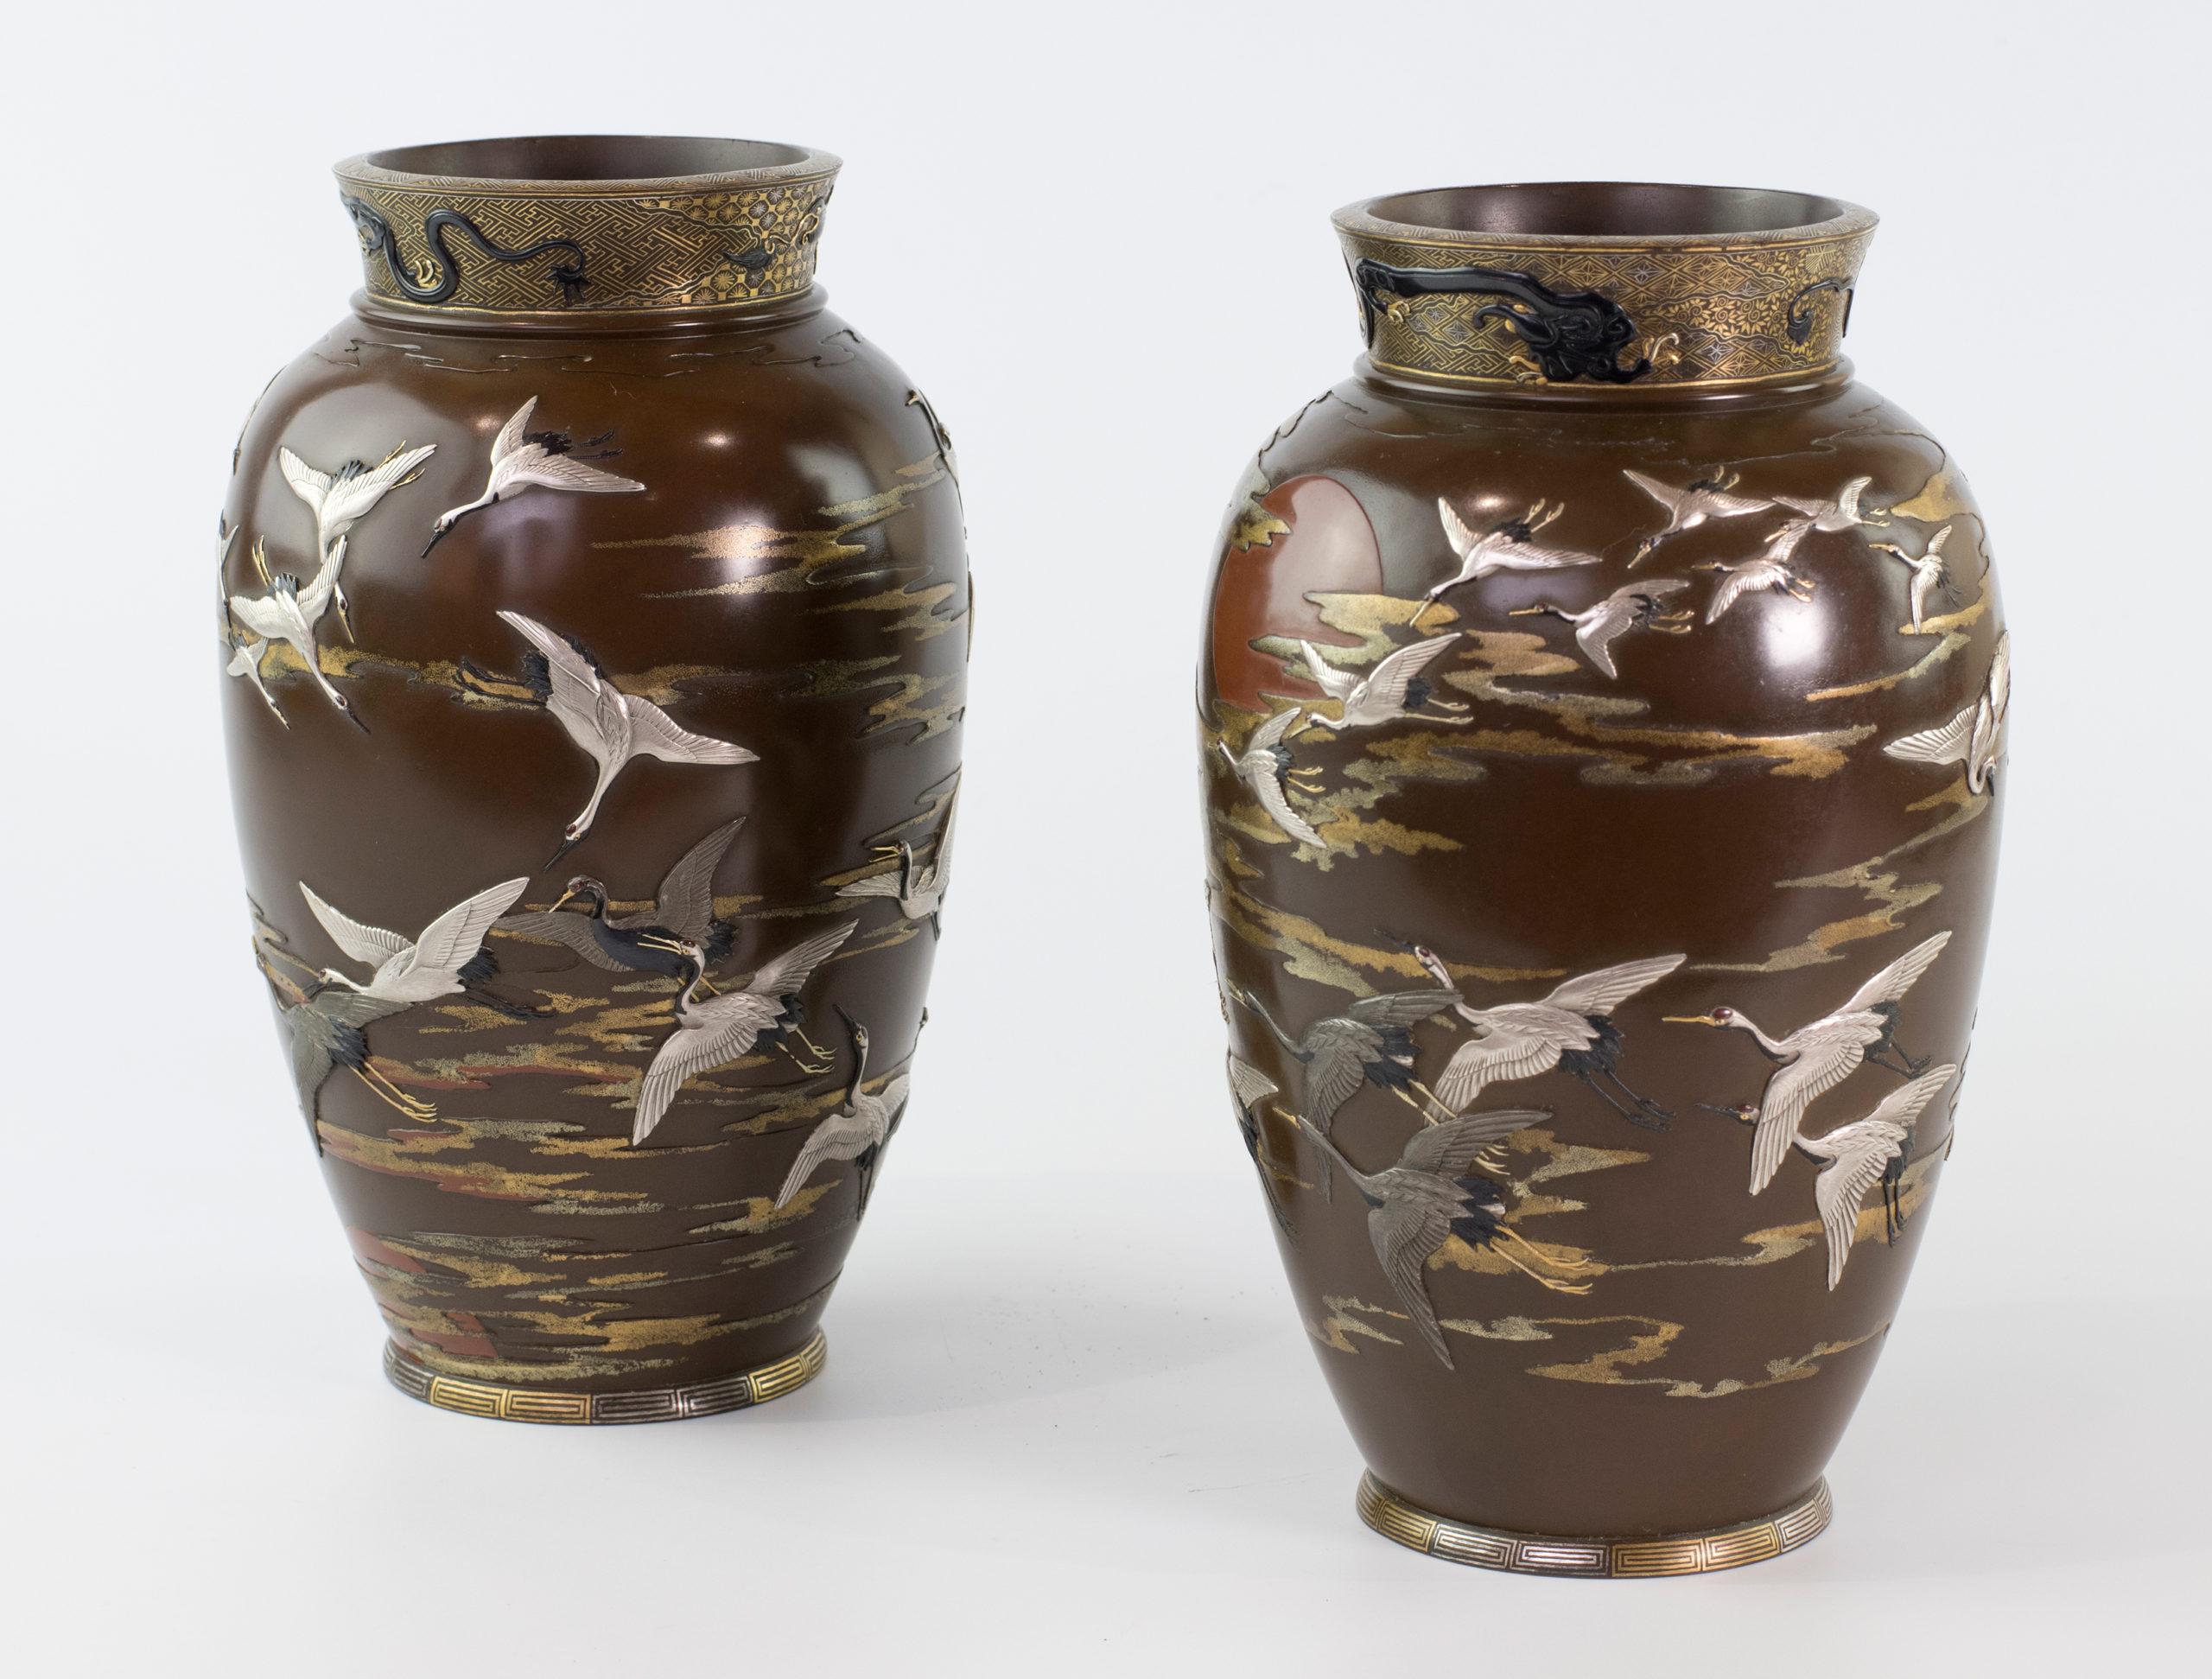 Dans le cadre de notre collection d'œuvres d'art japonaises, nous avons le plaisir de vous proposer cette paire très inhabituelle de vases en bronze et en métal mixte de la période Meiji 1868-1912. Chaque vase représente une multitude de grues de